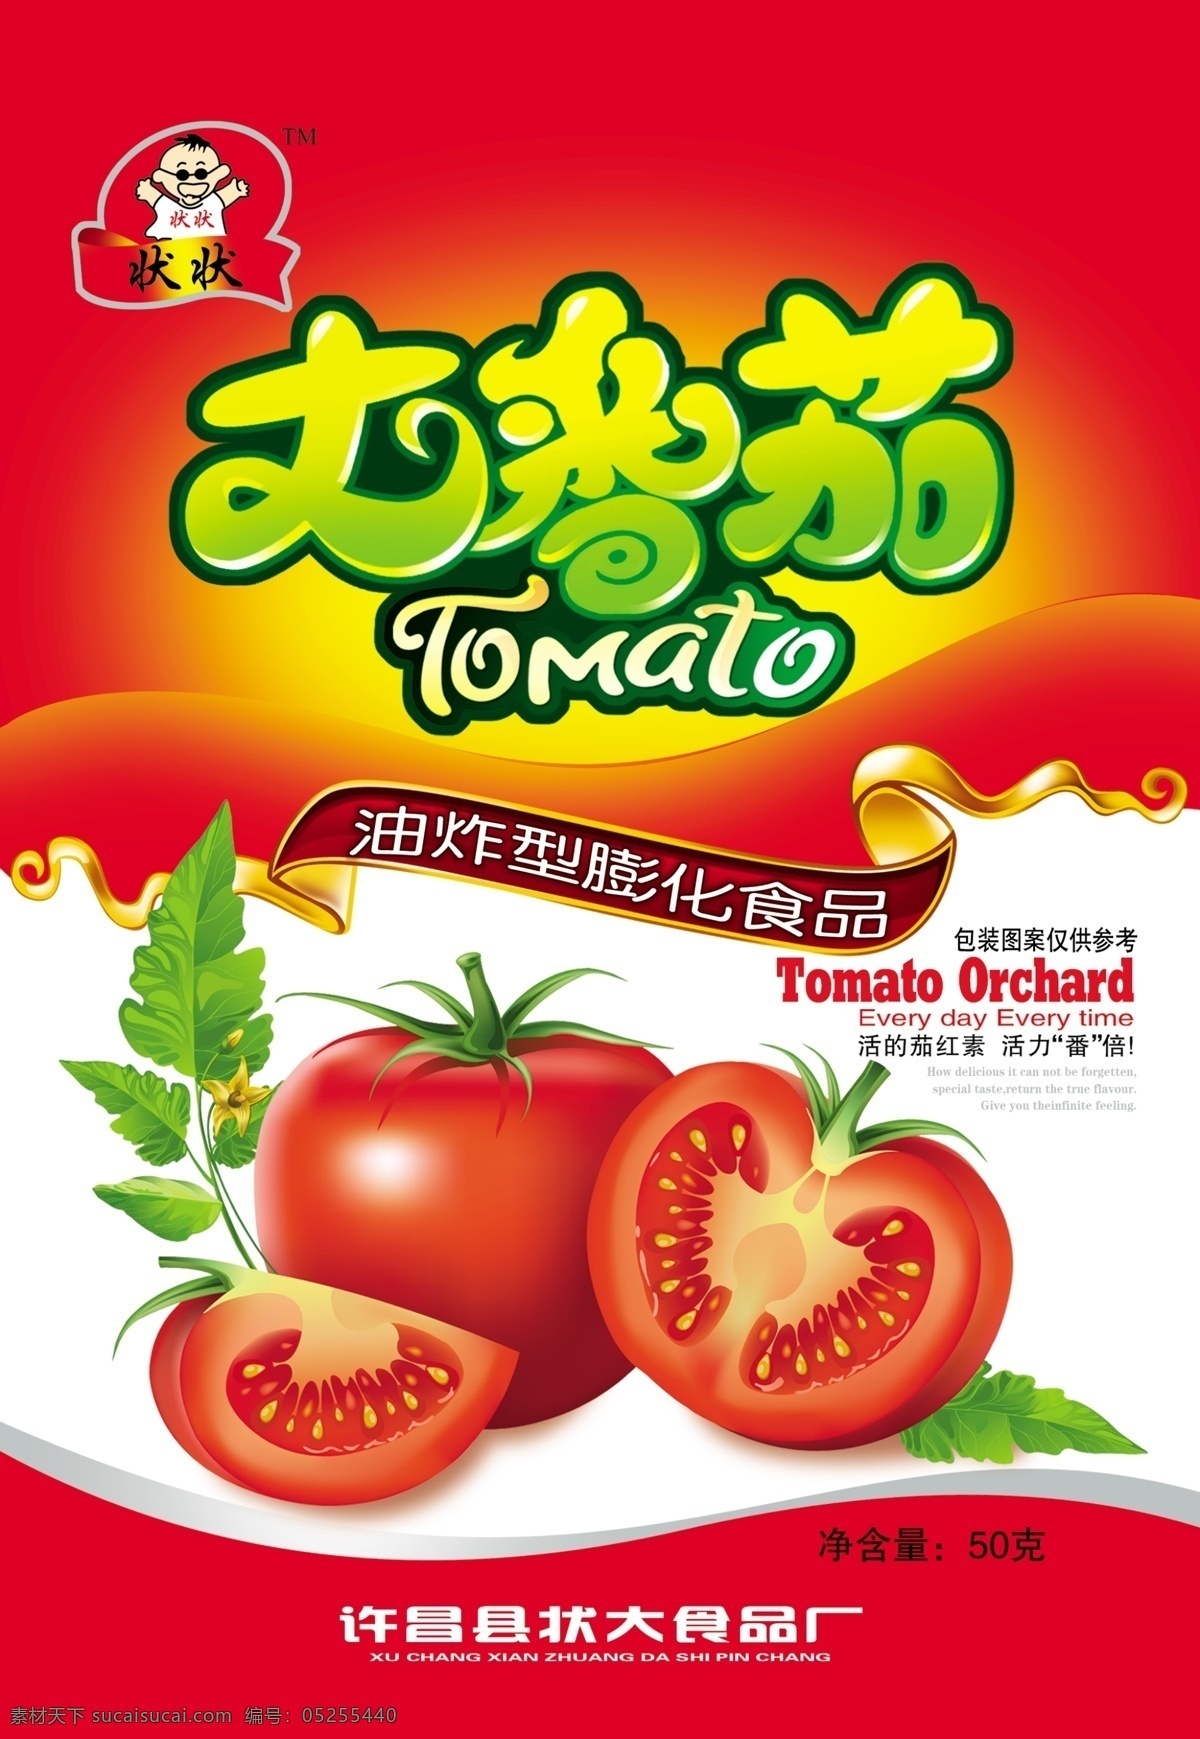 大番茄 番茄 西红柿 包装 食品 一半 包装设计